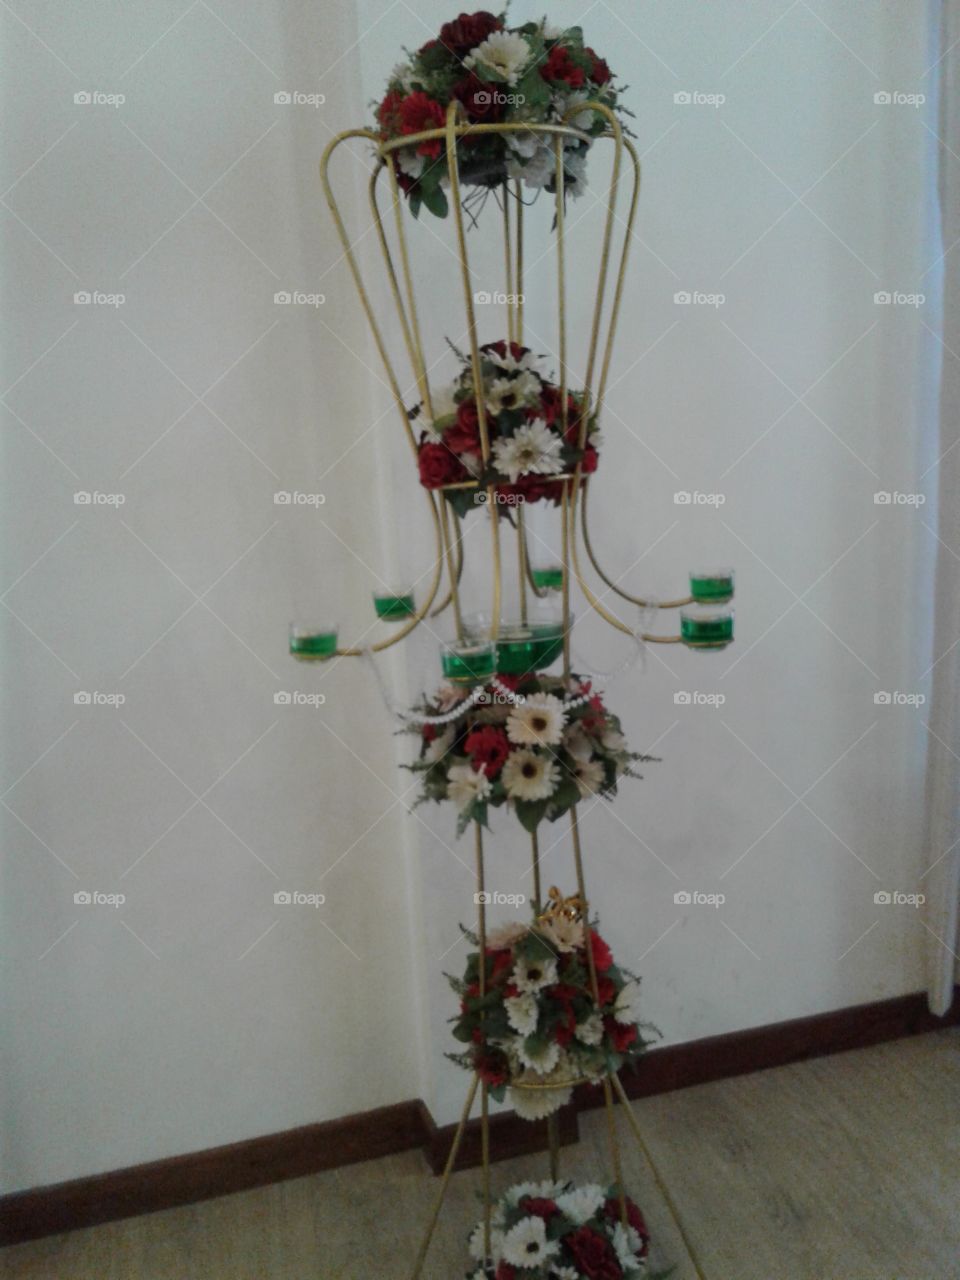 Flower arrangment/decoration